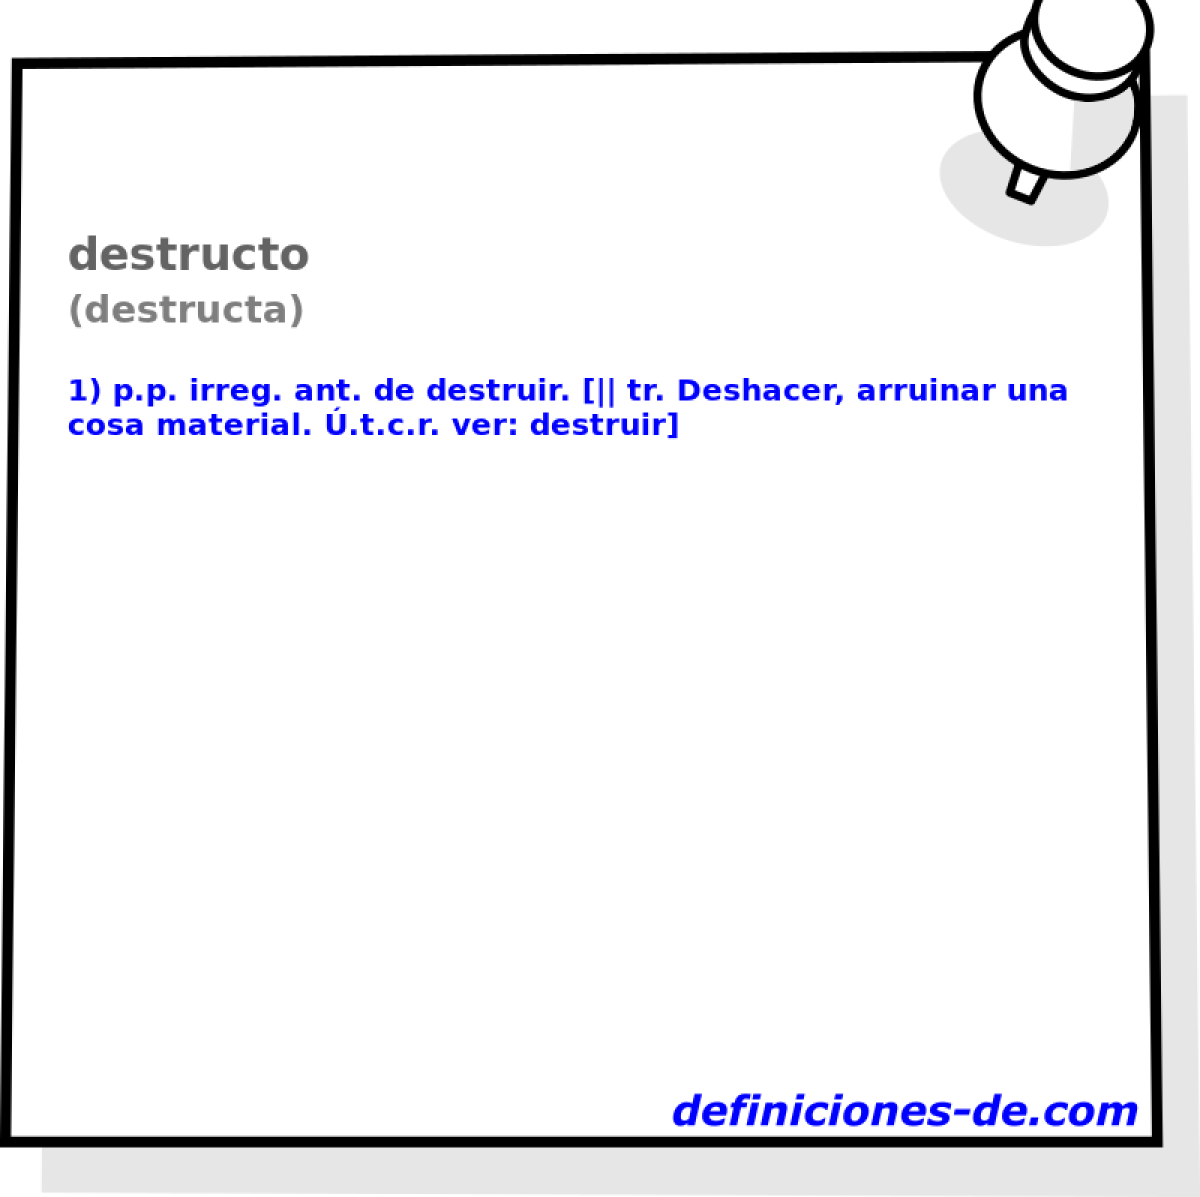 destructo (destructa)